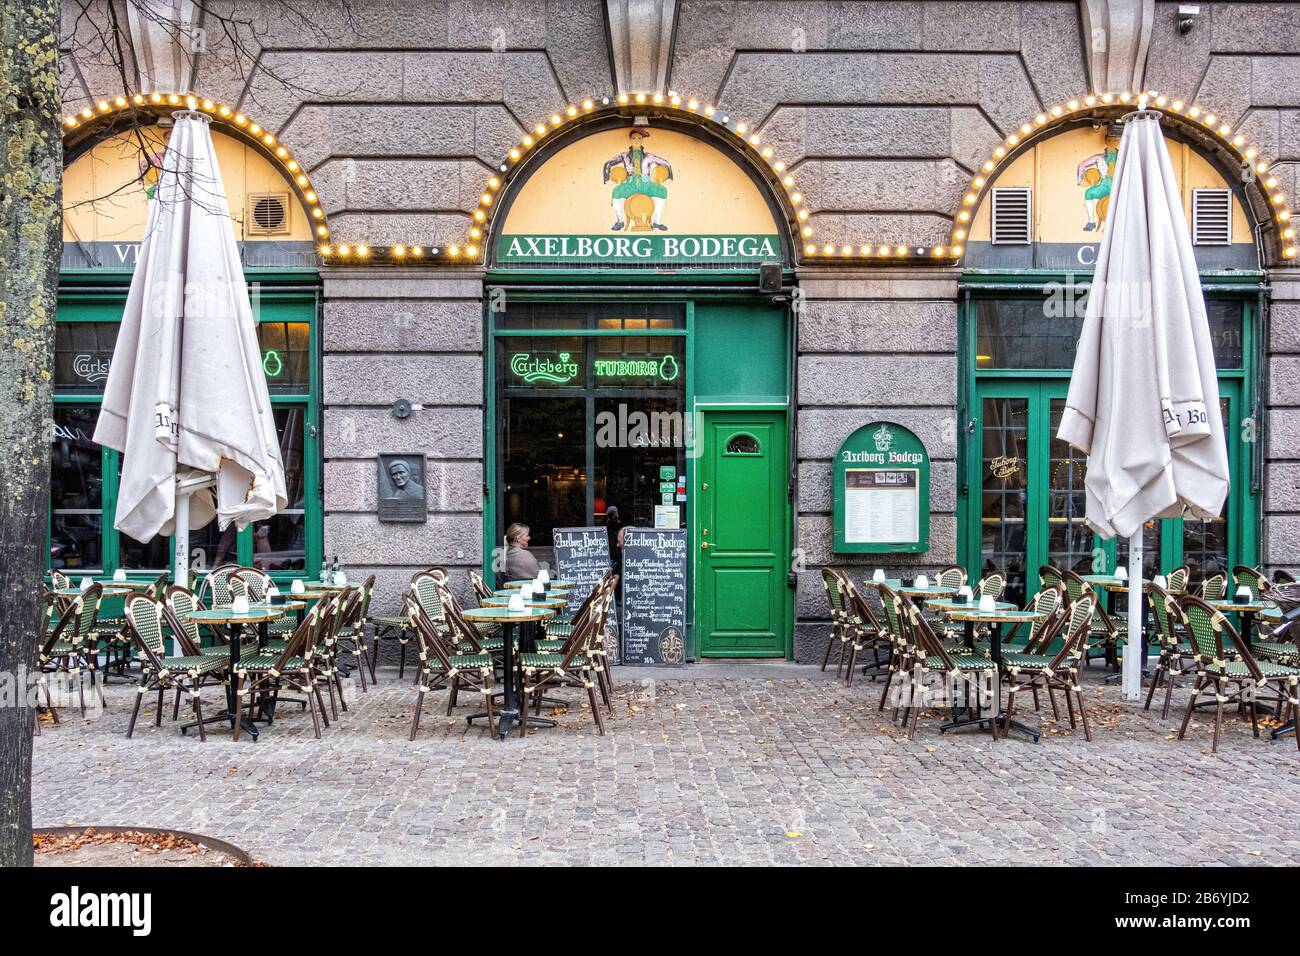 Axelborg Bodega restaurant & cafe with outside tables on Axeltorv Square in Copenhagen,Denmark Stock Photo